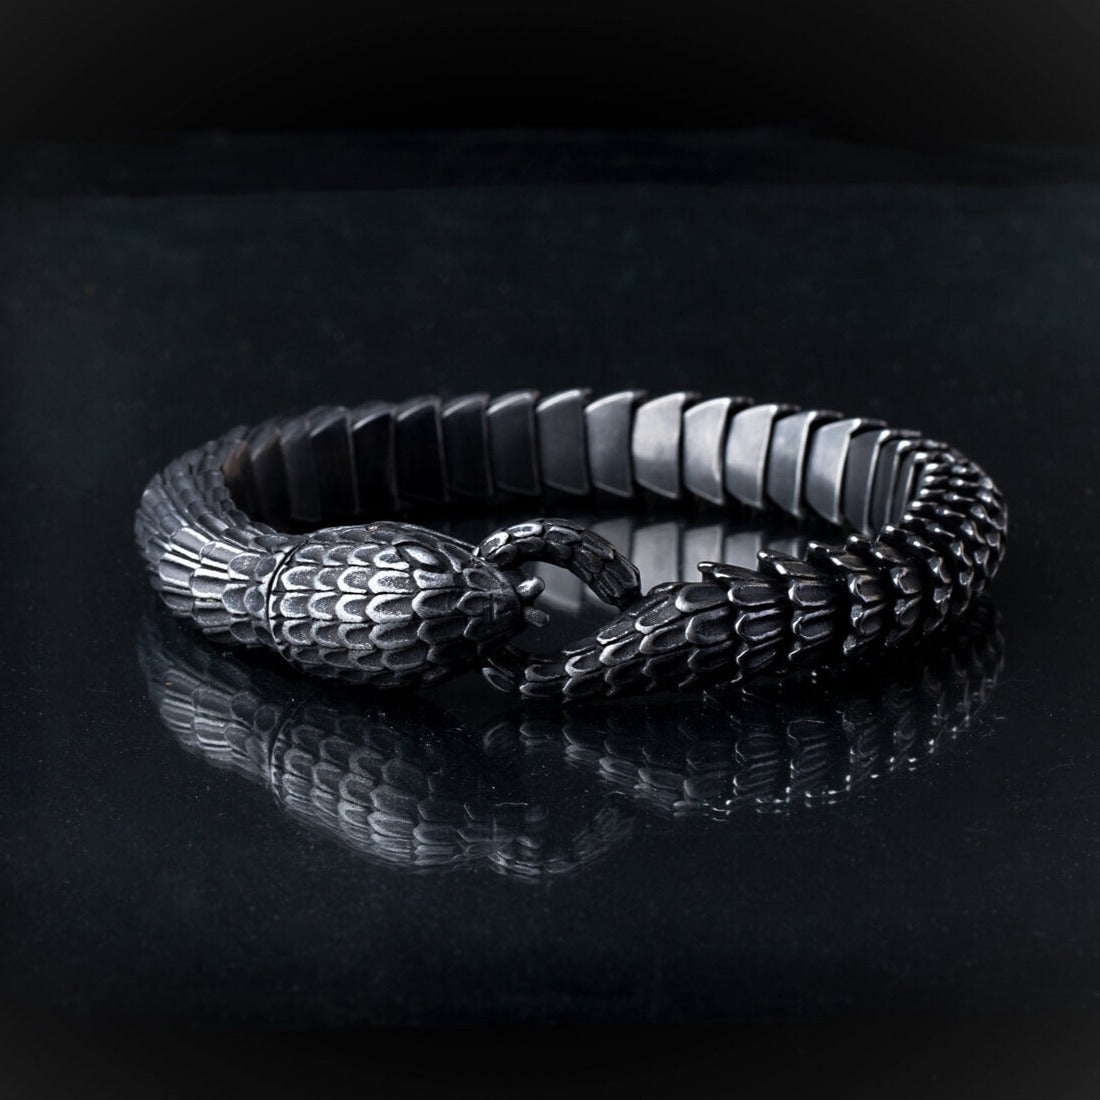 Premium Stainless Steel Black Snake Bracelet for Men, 23 cm